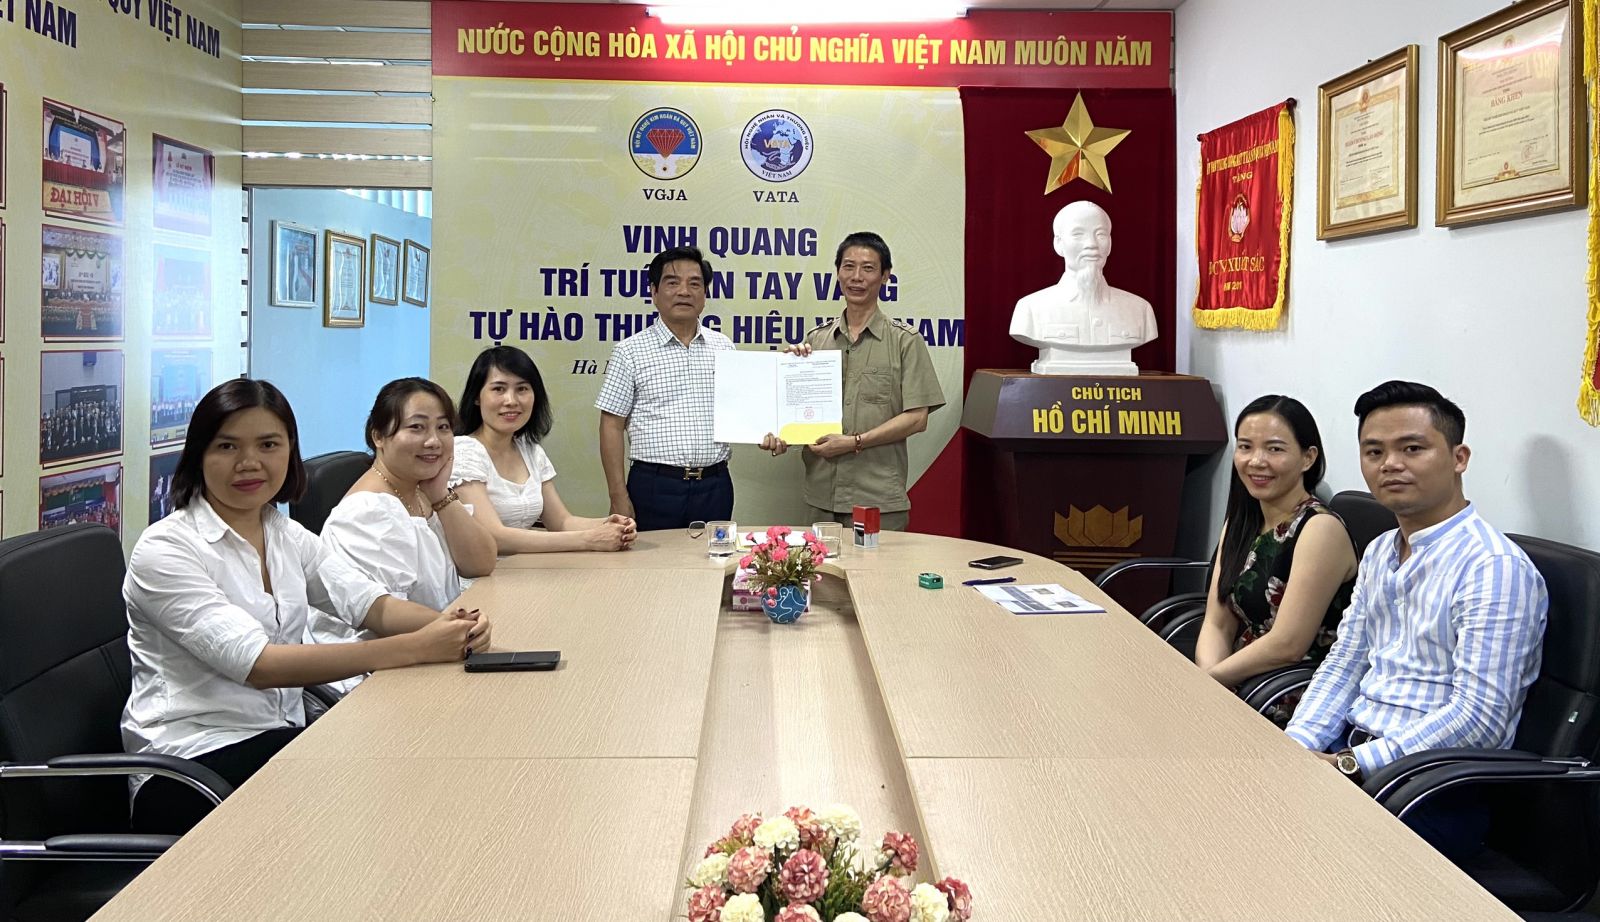 Hội Mỹ nghệ Kim hoàn đá quý Việt Nam bổ nhiệm giám đốc Trung tâm dạy nghề nhân đạo Hồng Ngọc